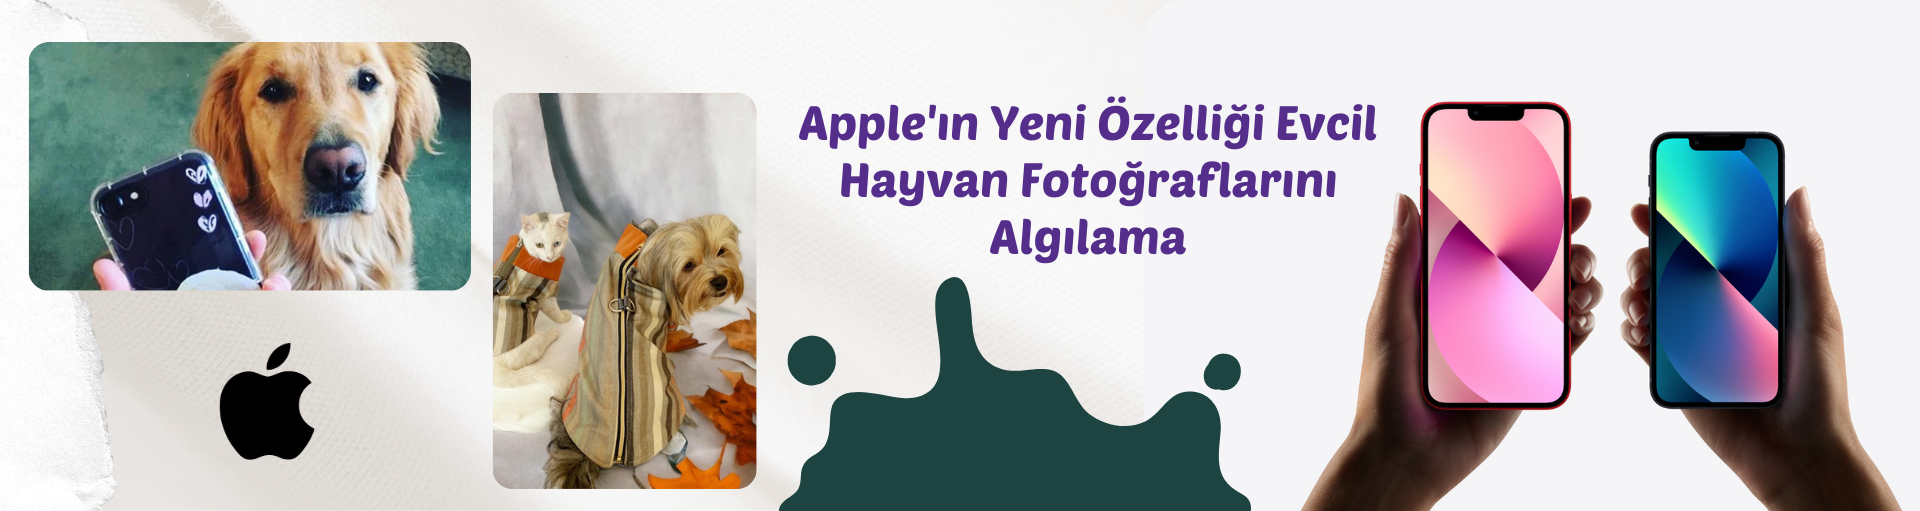 Apple'ın Yeni Özelliği: Evcil Hayvan Fotoğraflarını Algılama